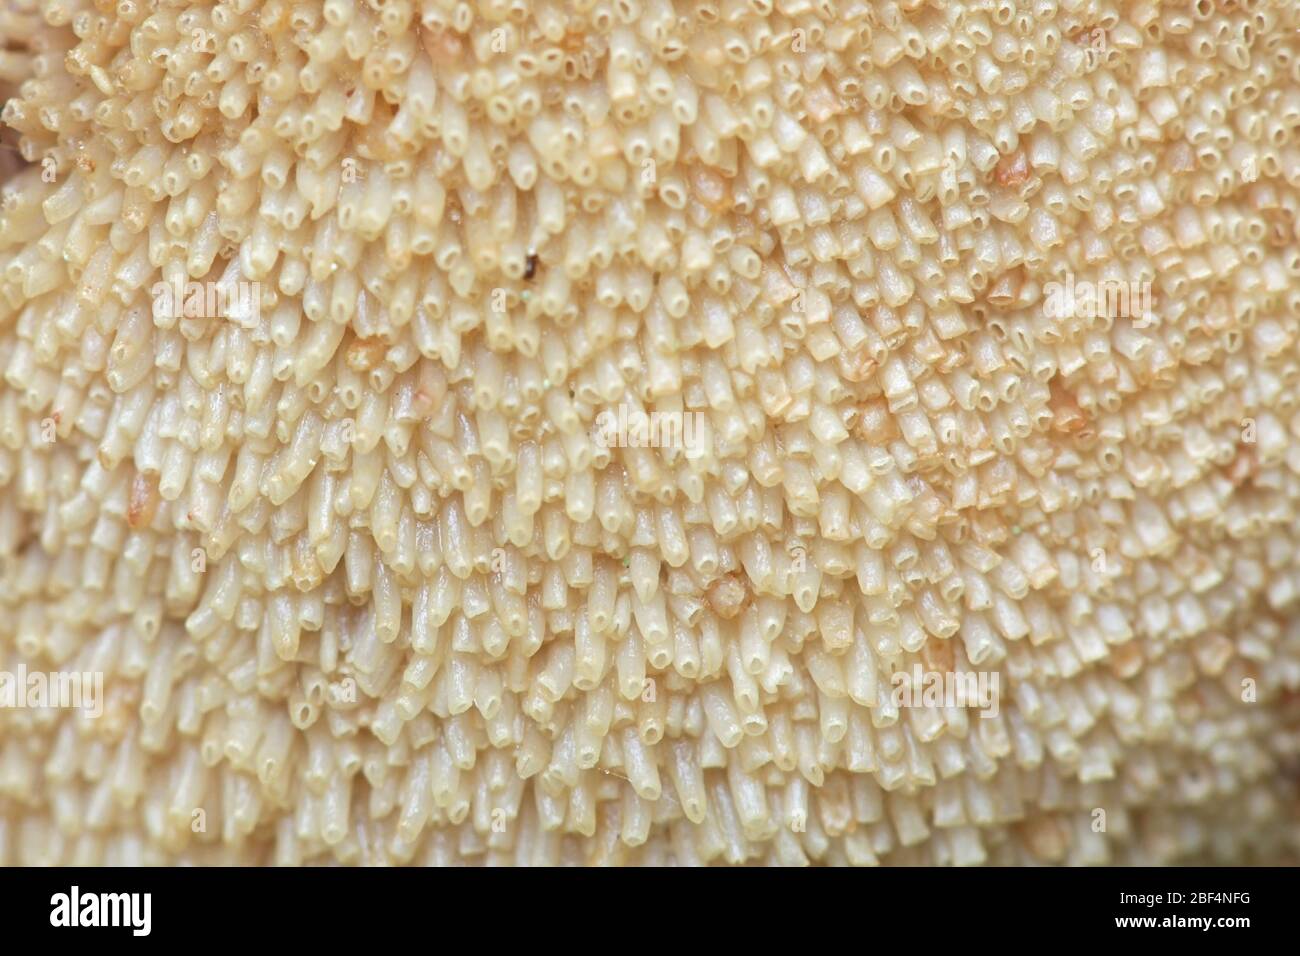 Fistulina hepatica, nota come fungus di bistecca, polipore di bistecca, lingua di bue e funghi di lingua, coltivando su quercia in Finlandia Foto Stock